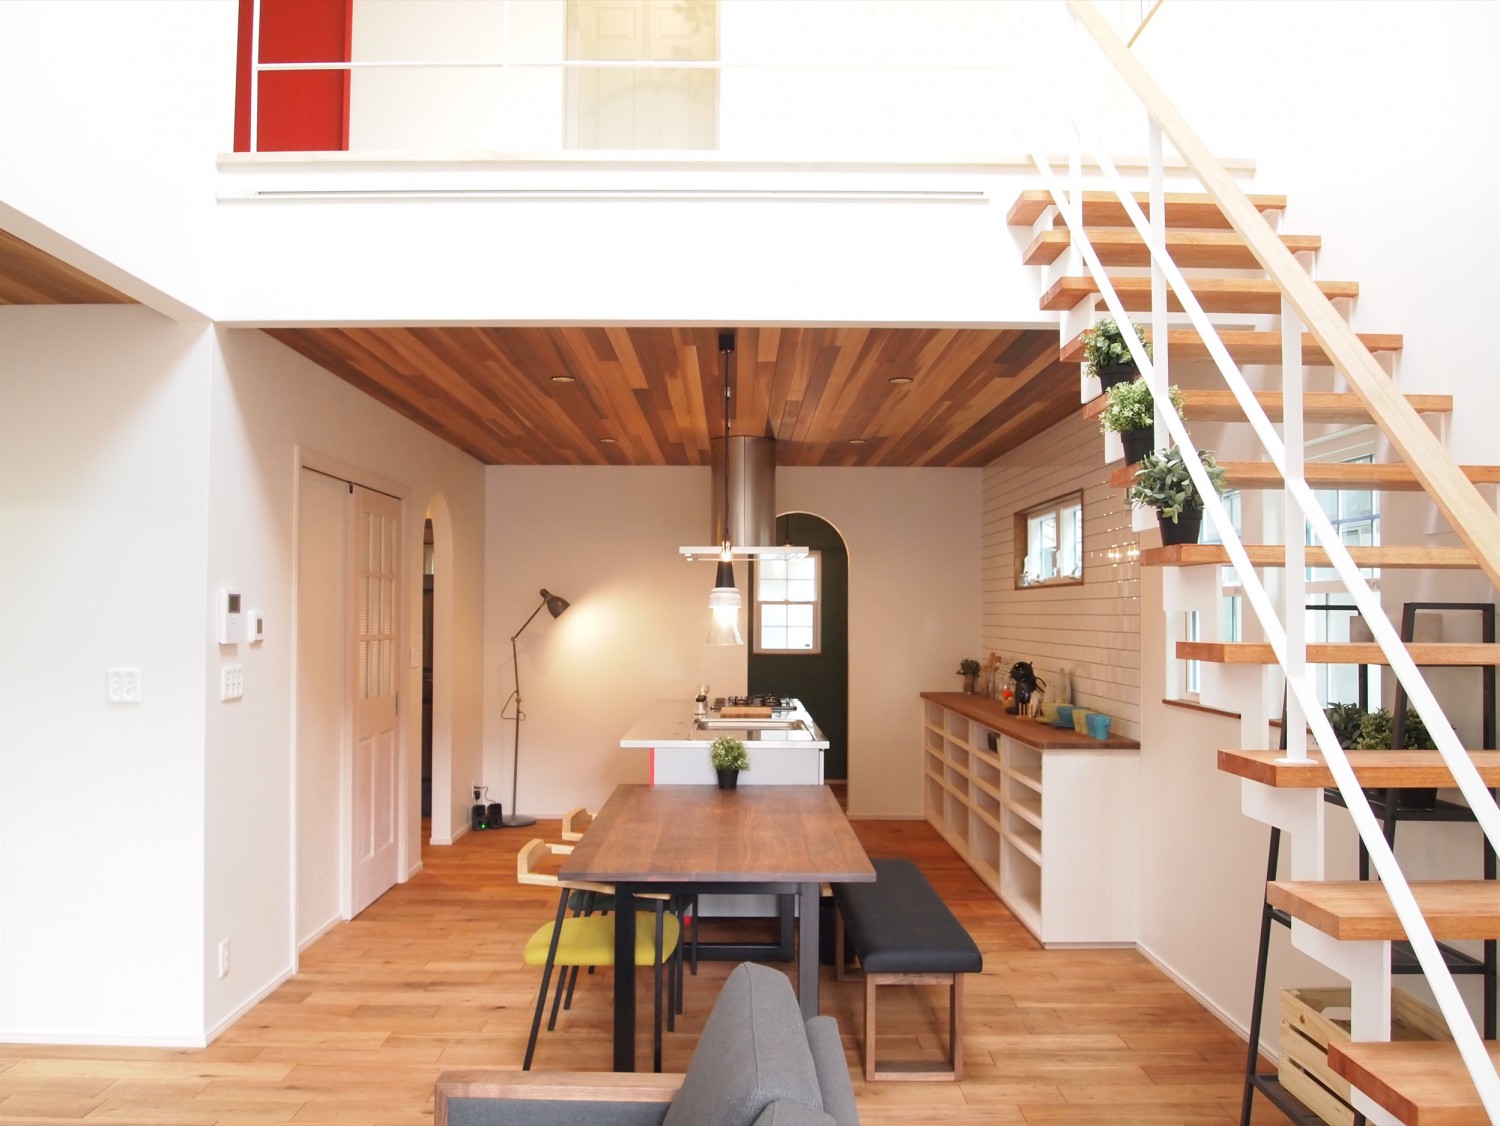 キッチンが主役の明るいお家 福井建設 自由設計の輸入住宅 山形市工務店